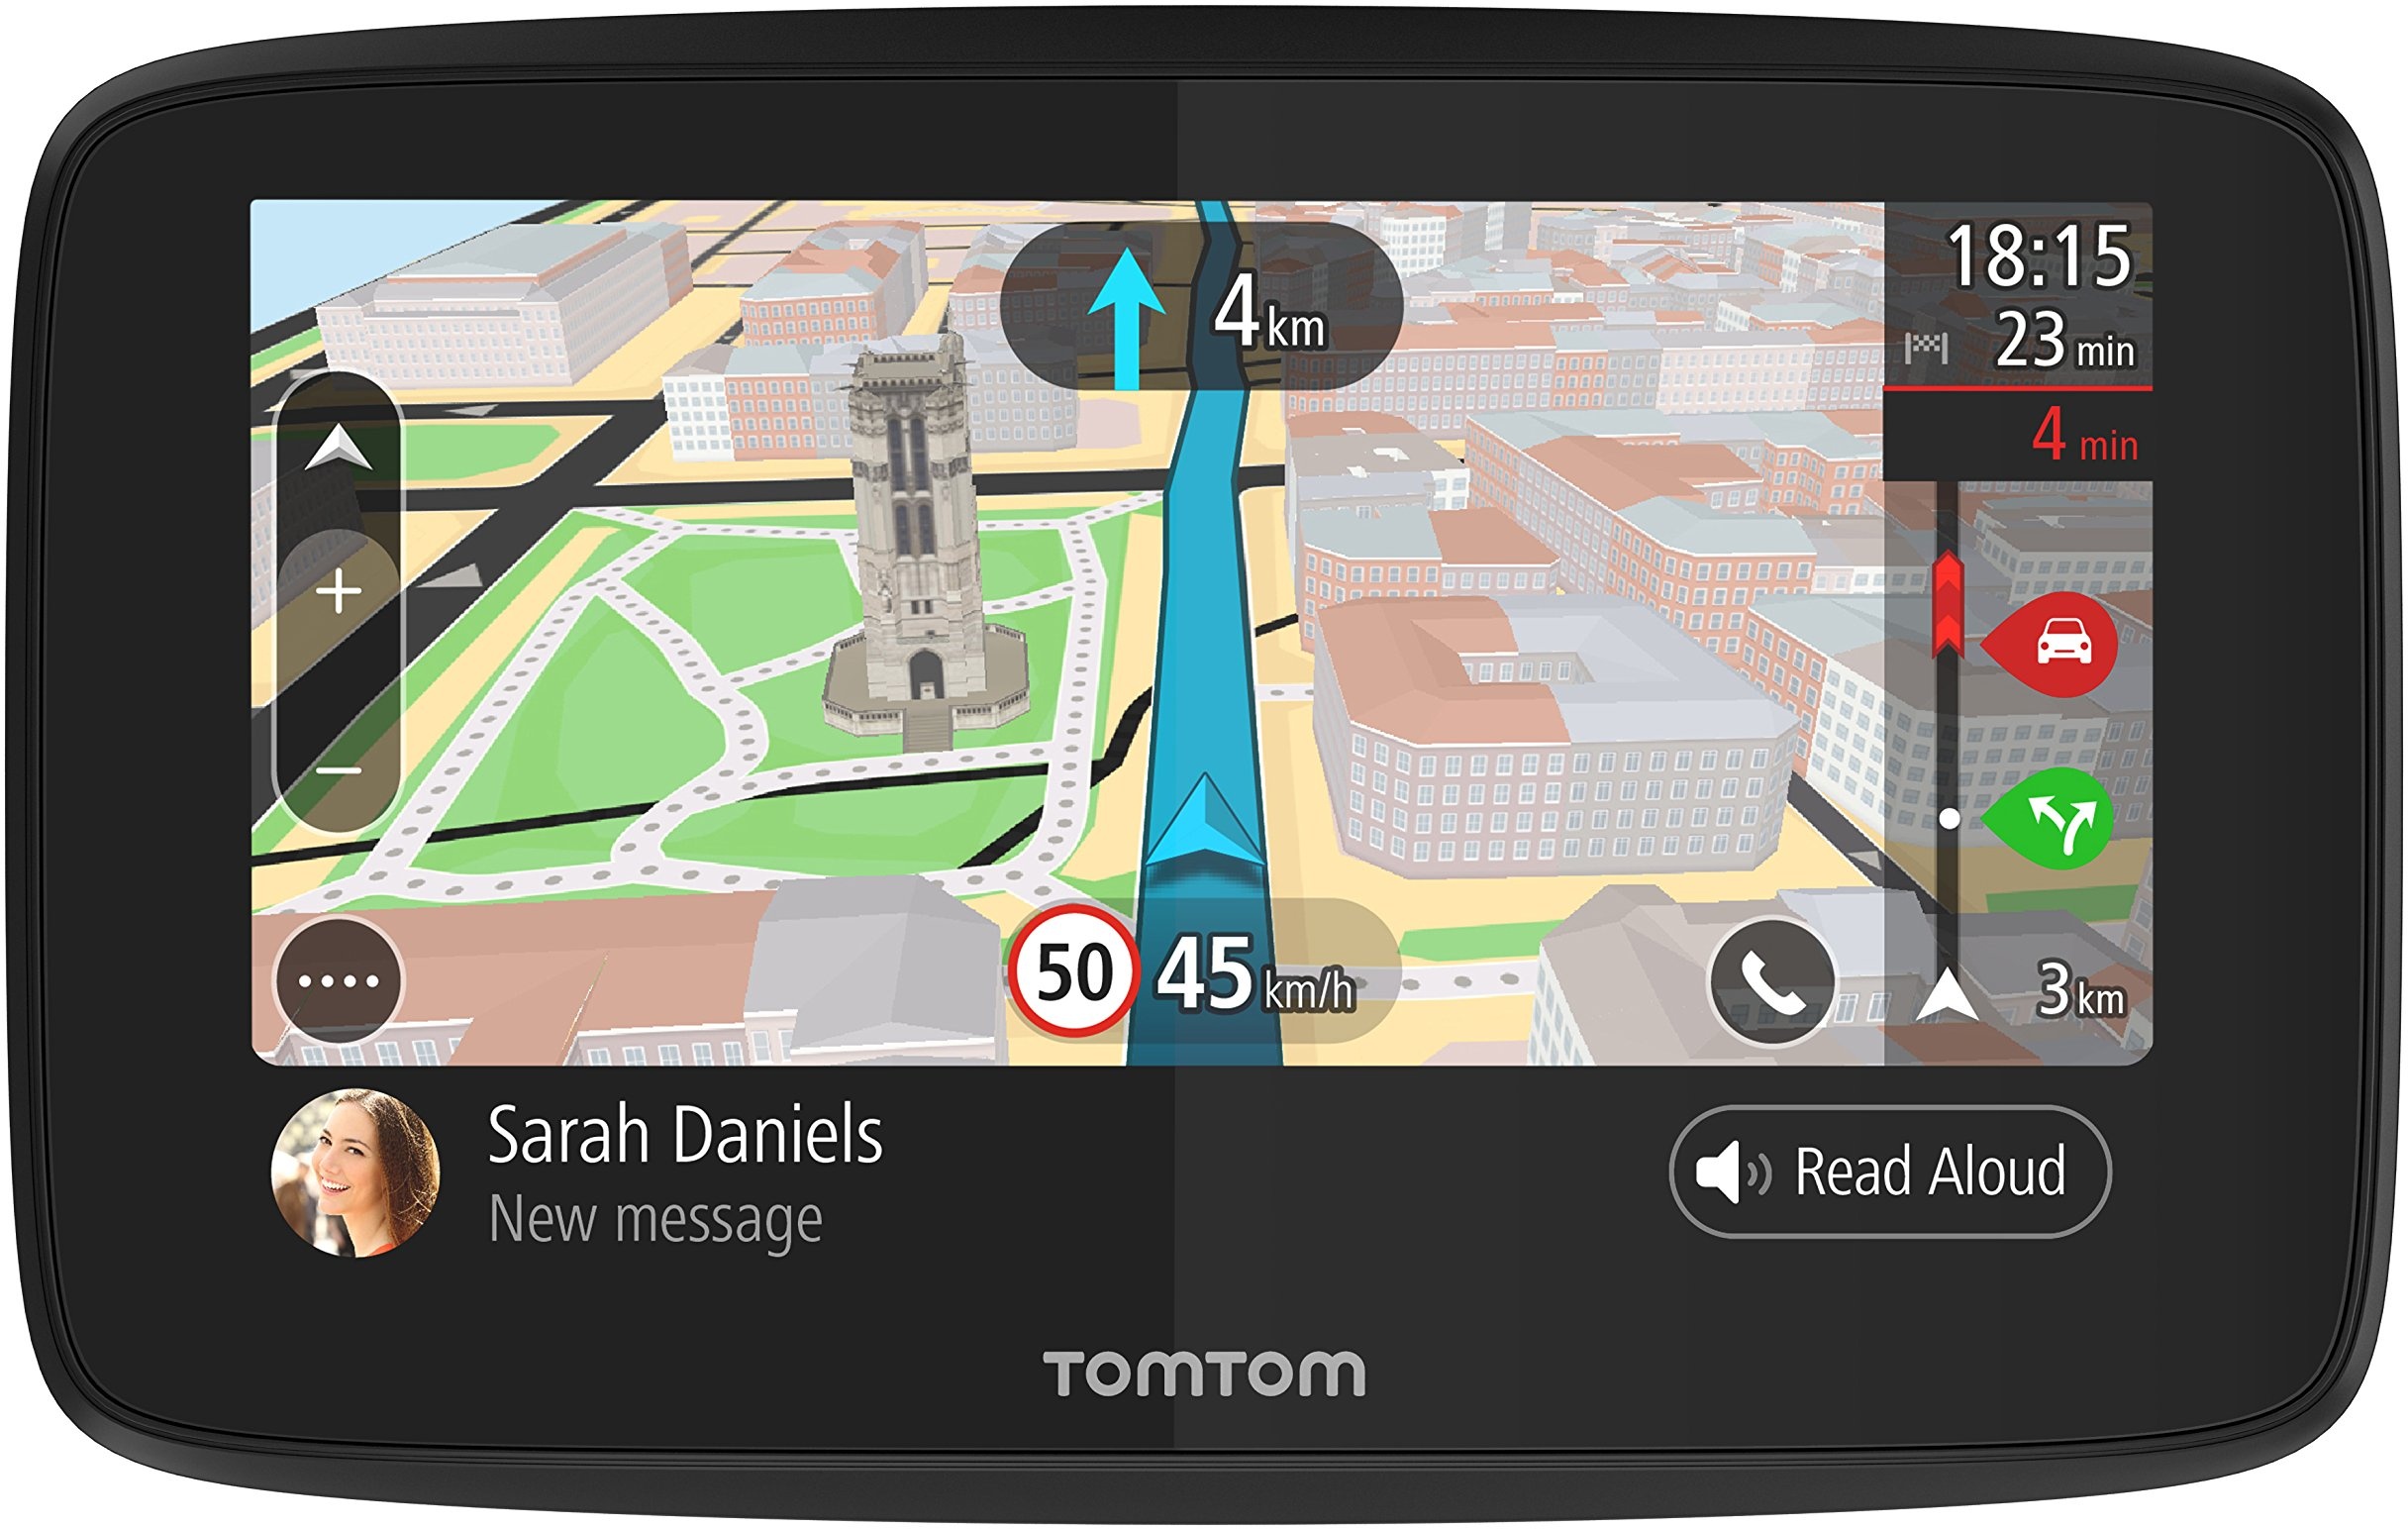 TomTom Navigationsgerät GO 520 (5 Zoll, Stauvermeidung dank TomTom Traffic, Karten-Updates Welt, Updates über Wi-Fi, Freisprechen)